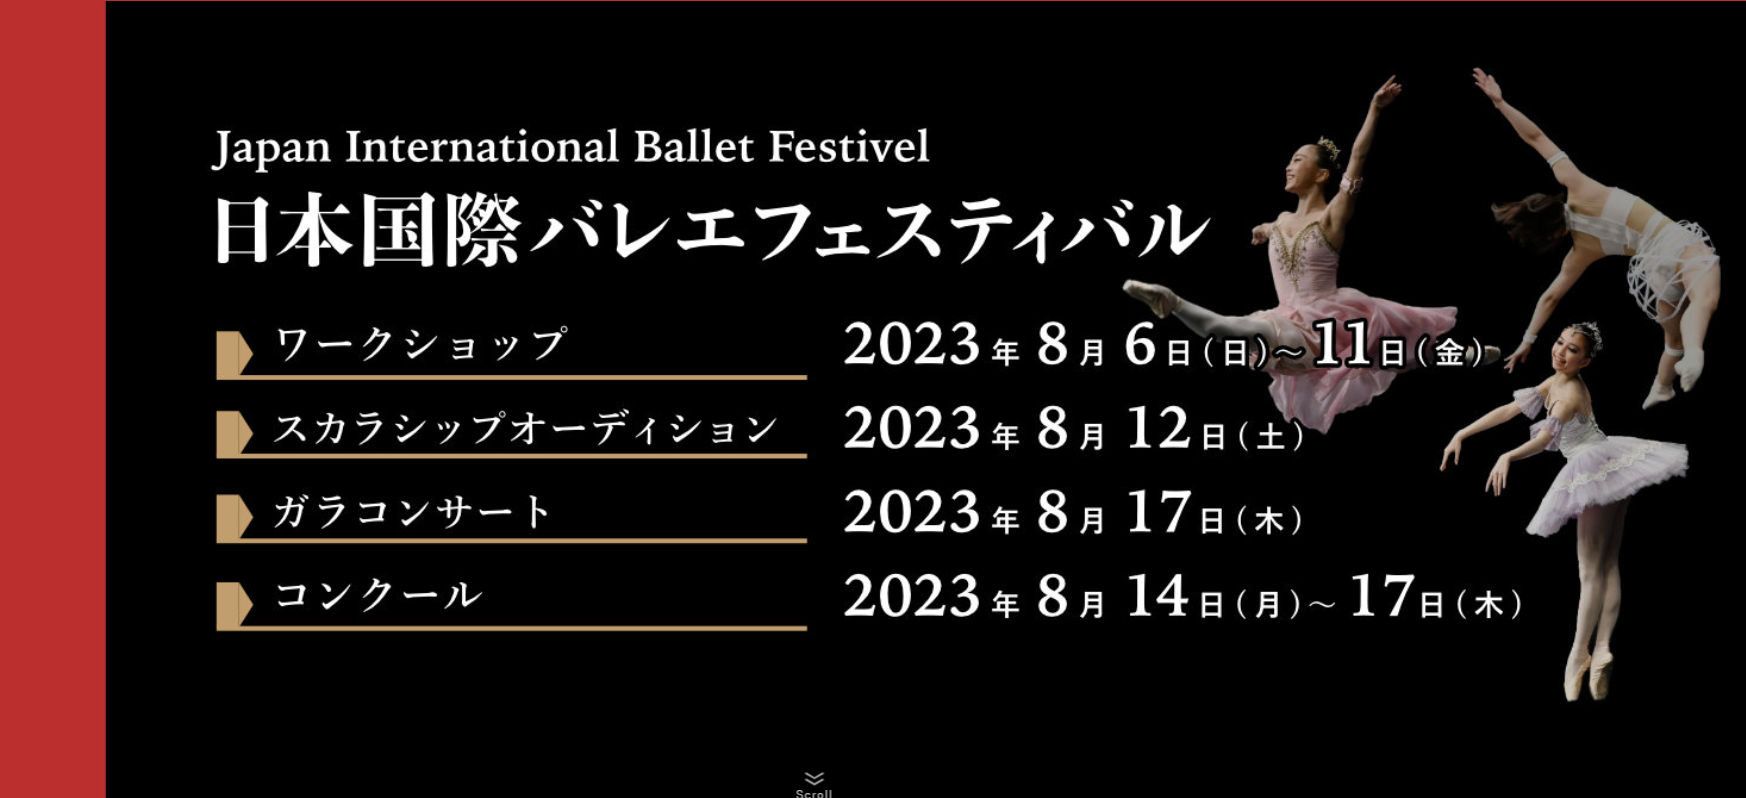 ウラジーミル・マラーホフら世界のバレエダンサーと教師が集結 8月に東京、神奈川で日本国際バレエフェスティバル2023開催 | スポーツマニア